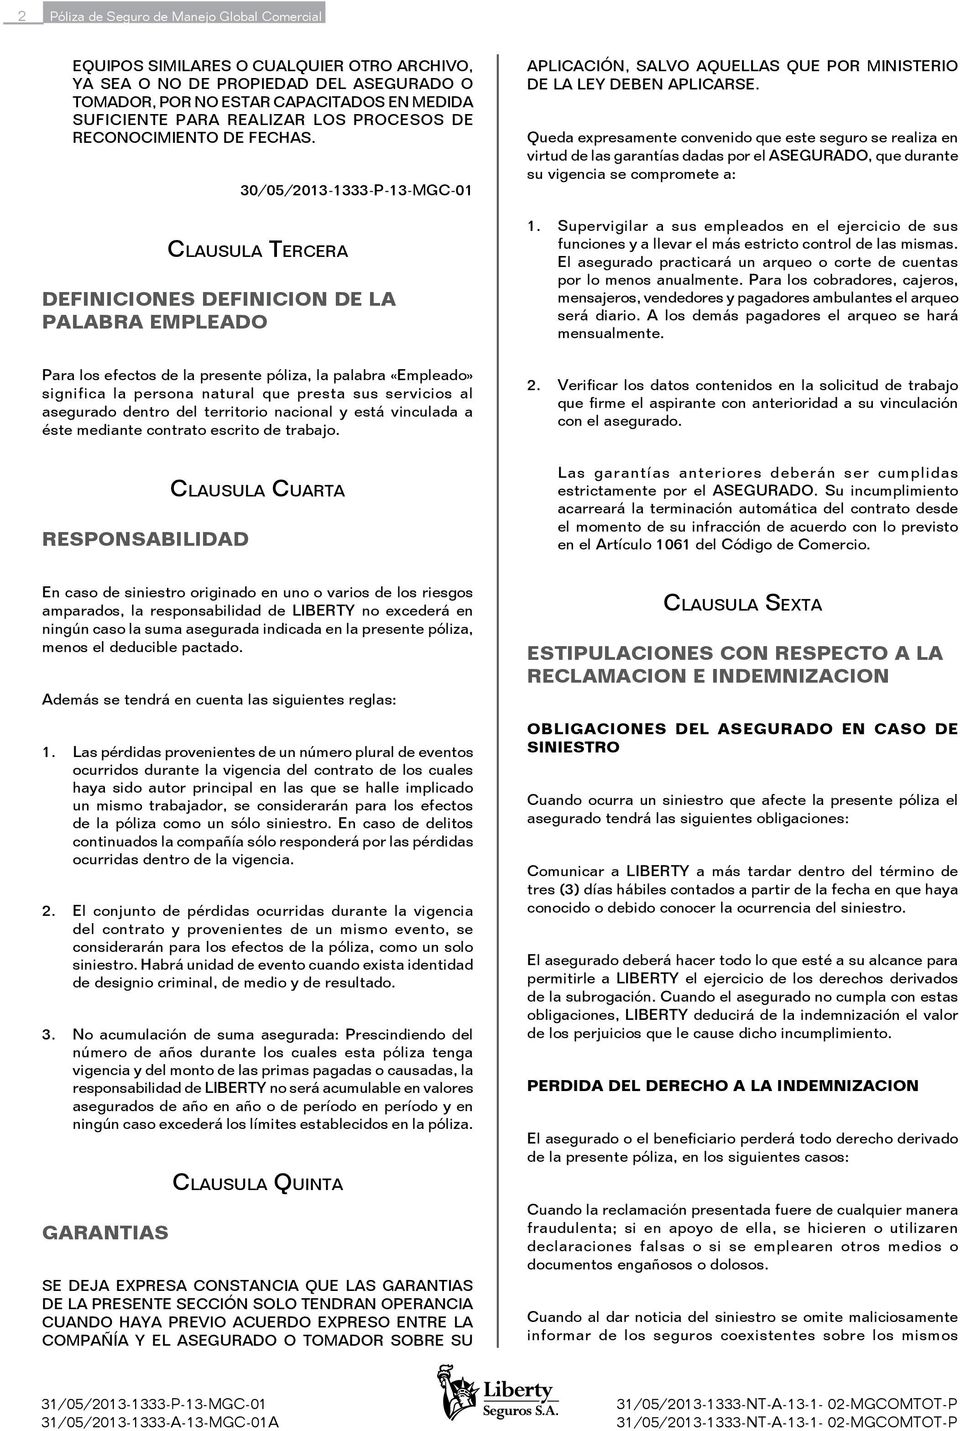 30/05/2013-1333-P-13-MGC-01 Clausula Tercera DEFINICIONES DEFINICION DE LA PALABRA EMPLEADO APLICACIÓN, SALVO AQUELLAS QUE POR MINISTERIO DE LA LEY DEBEN APLICARSE.